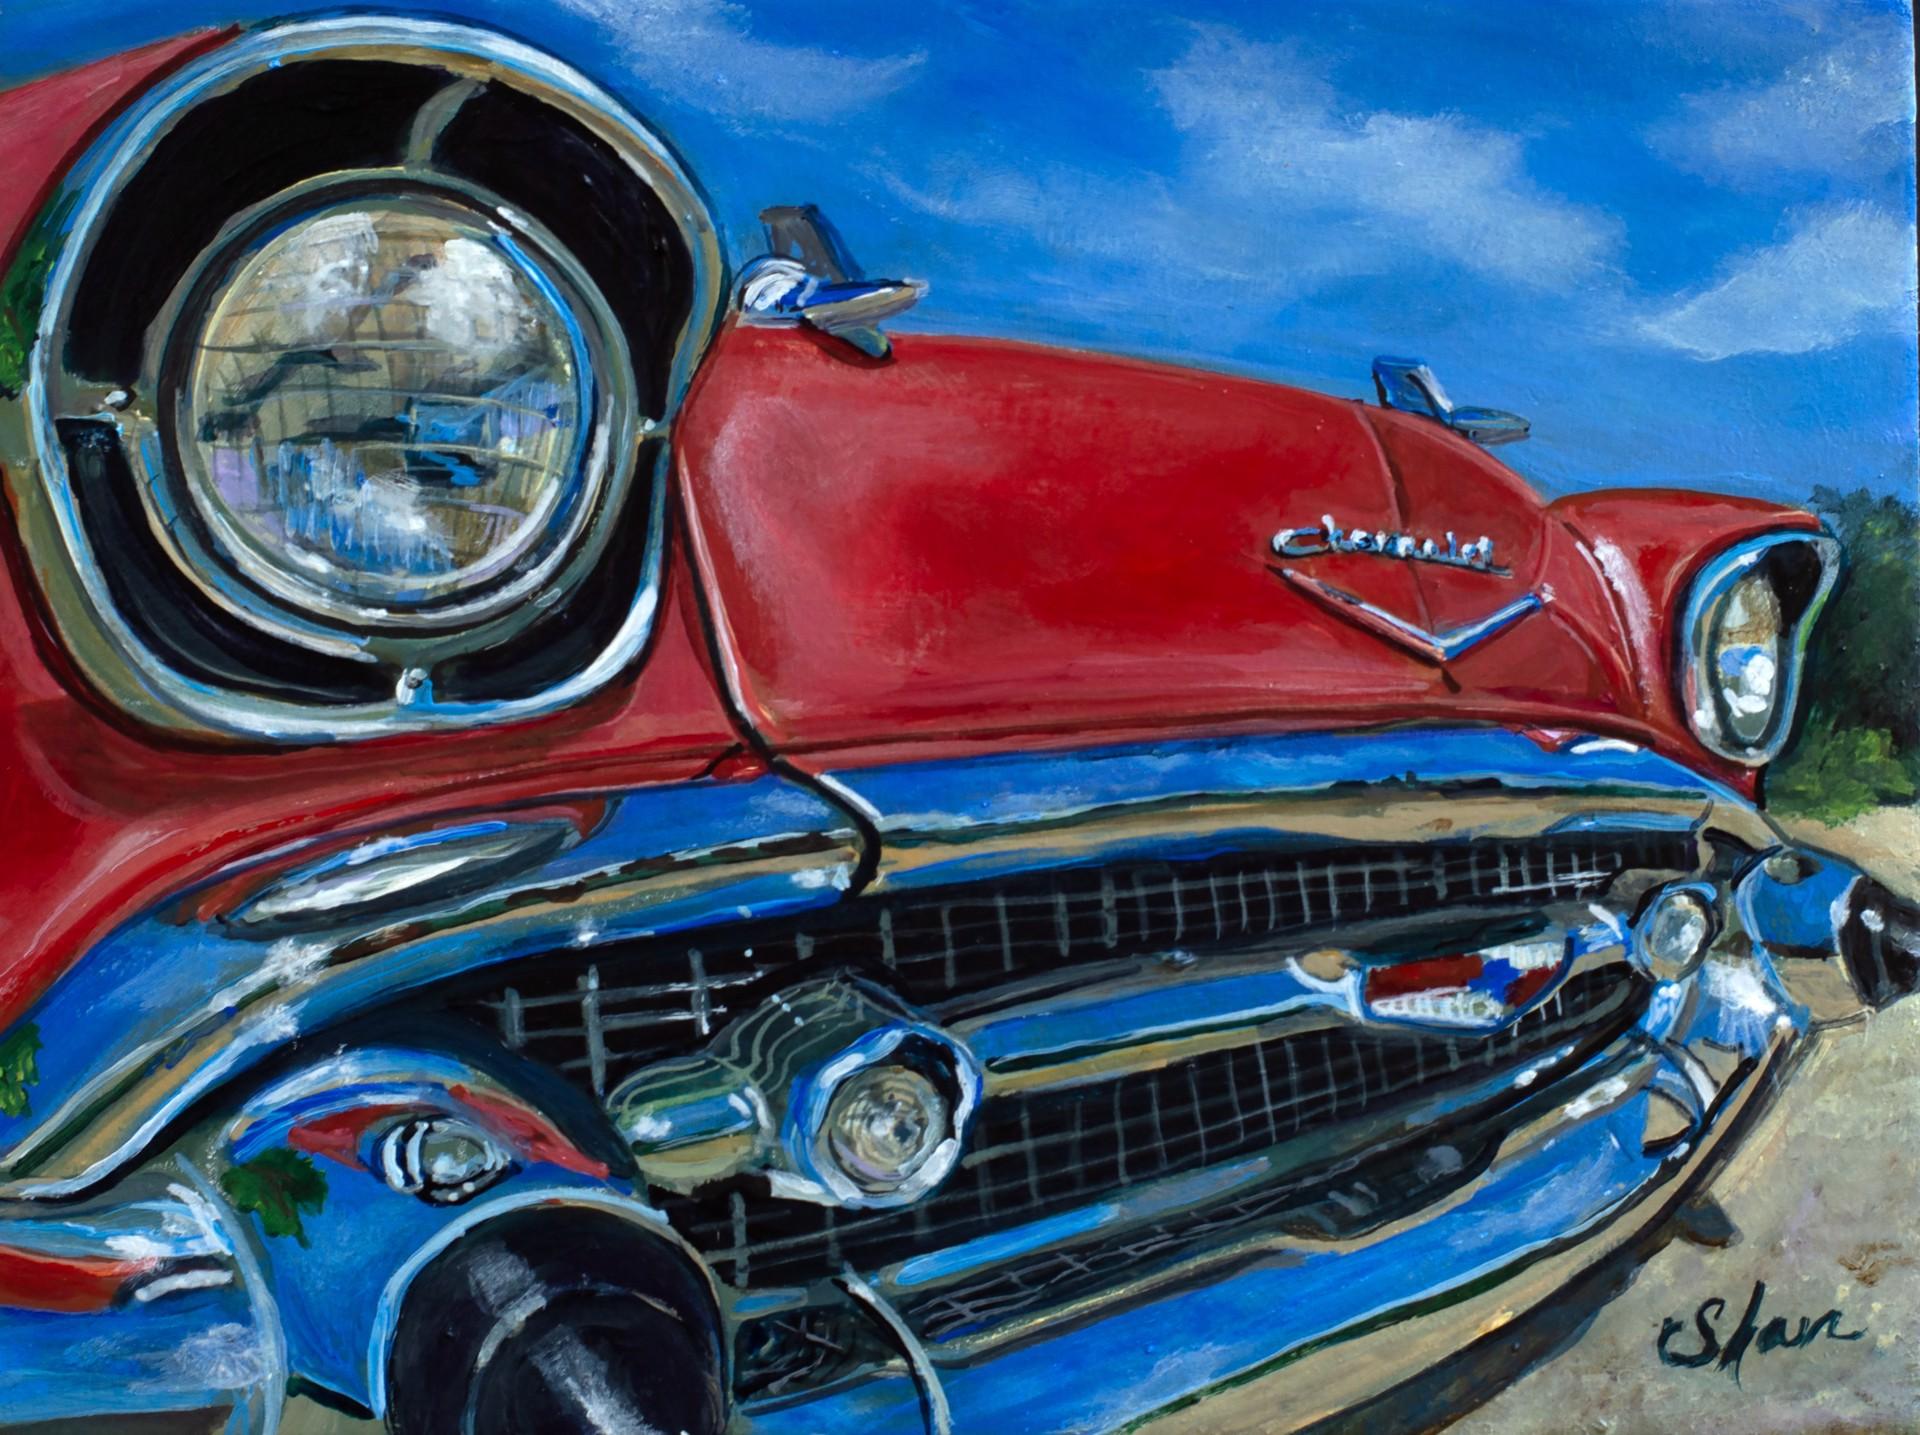 Shan Fannin Still-Life Painting - "Lola" - 1957 Chevrolet Bel Air